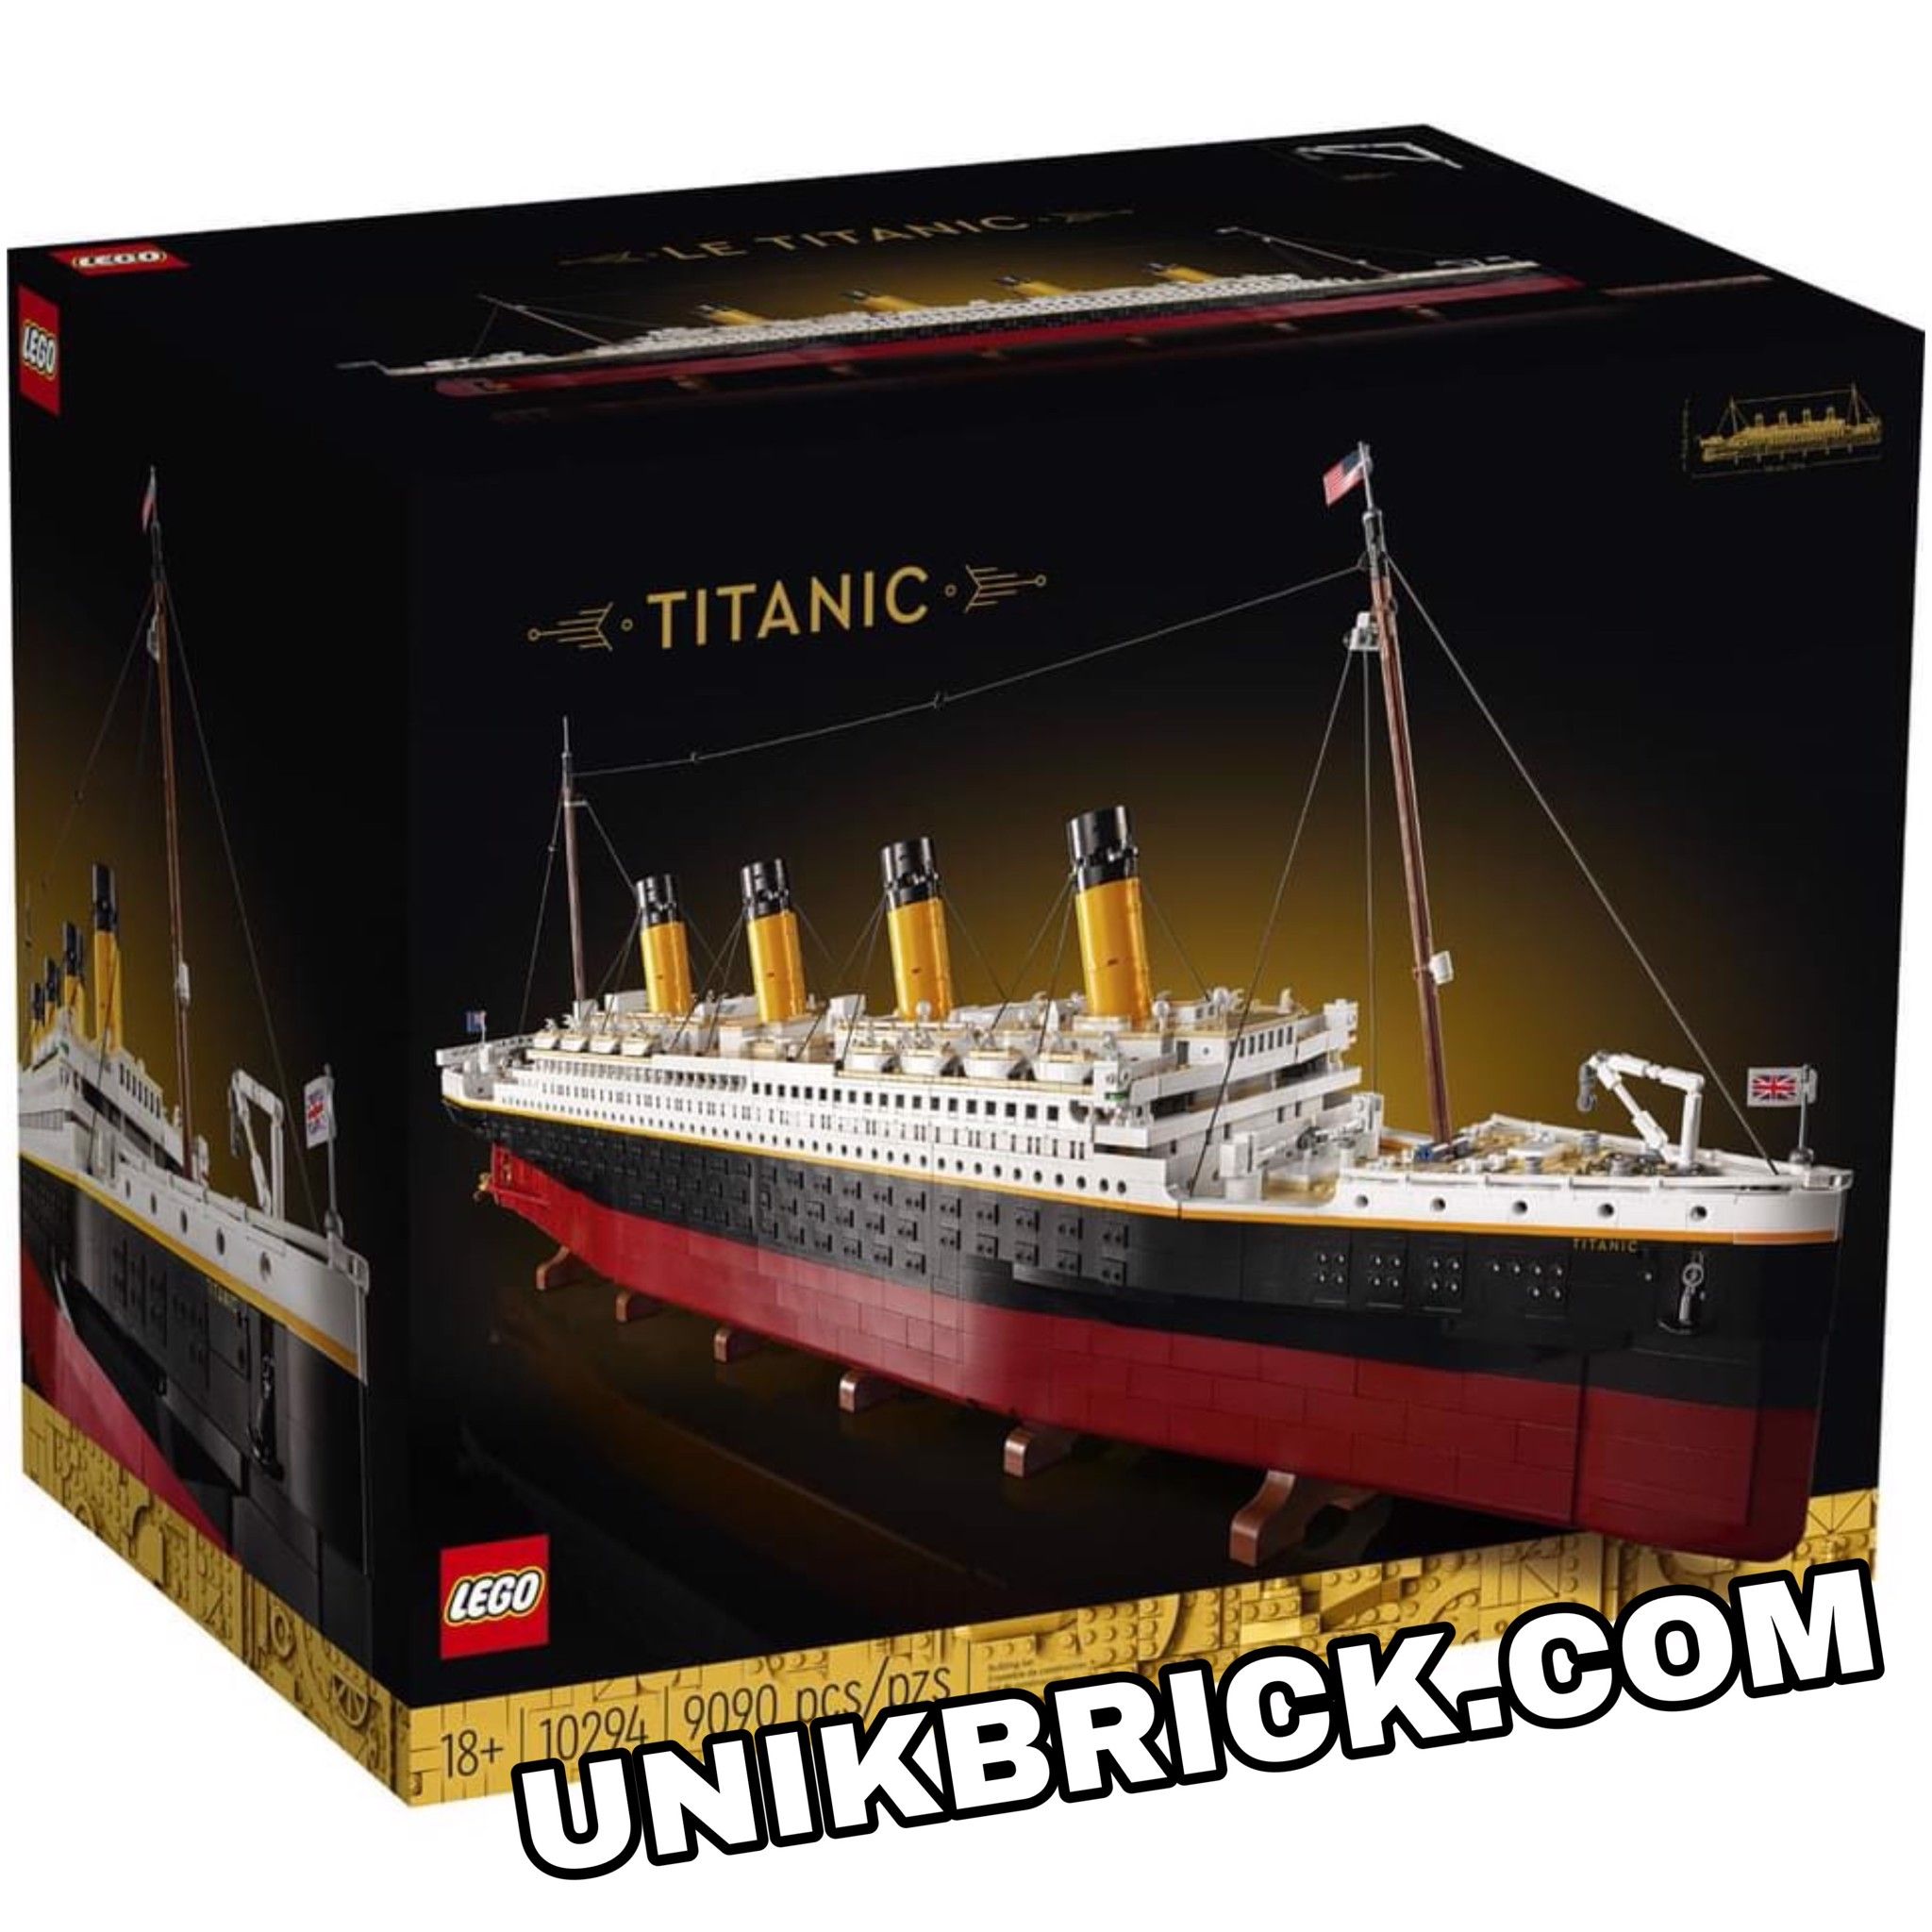 Ota selvää 55+ imagen titanic lego model